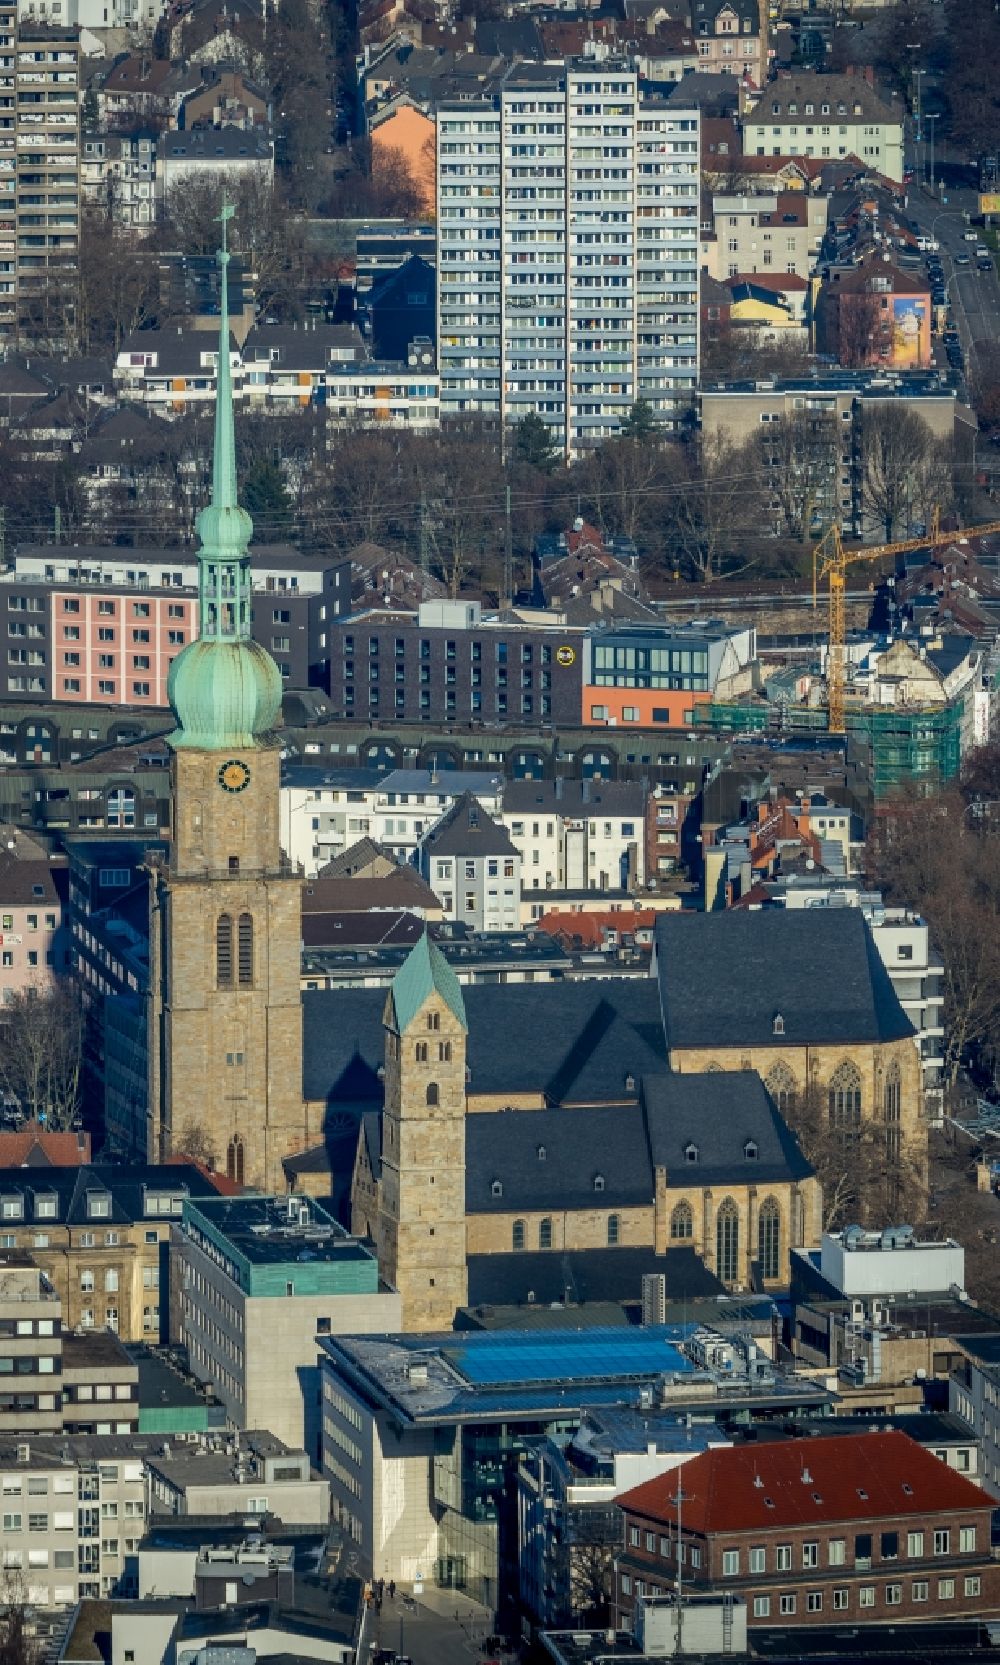 Luftaufnahme Dortmund - Kirchengebäude der St. Reinoldi in Dortmund im Bundesland Nordrhein-Westfalen, Deutschland